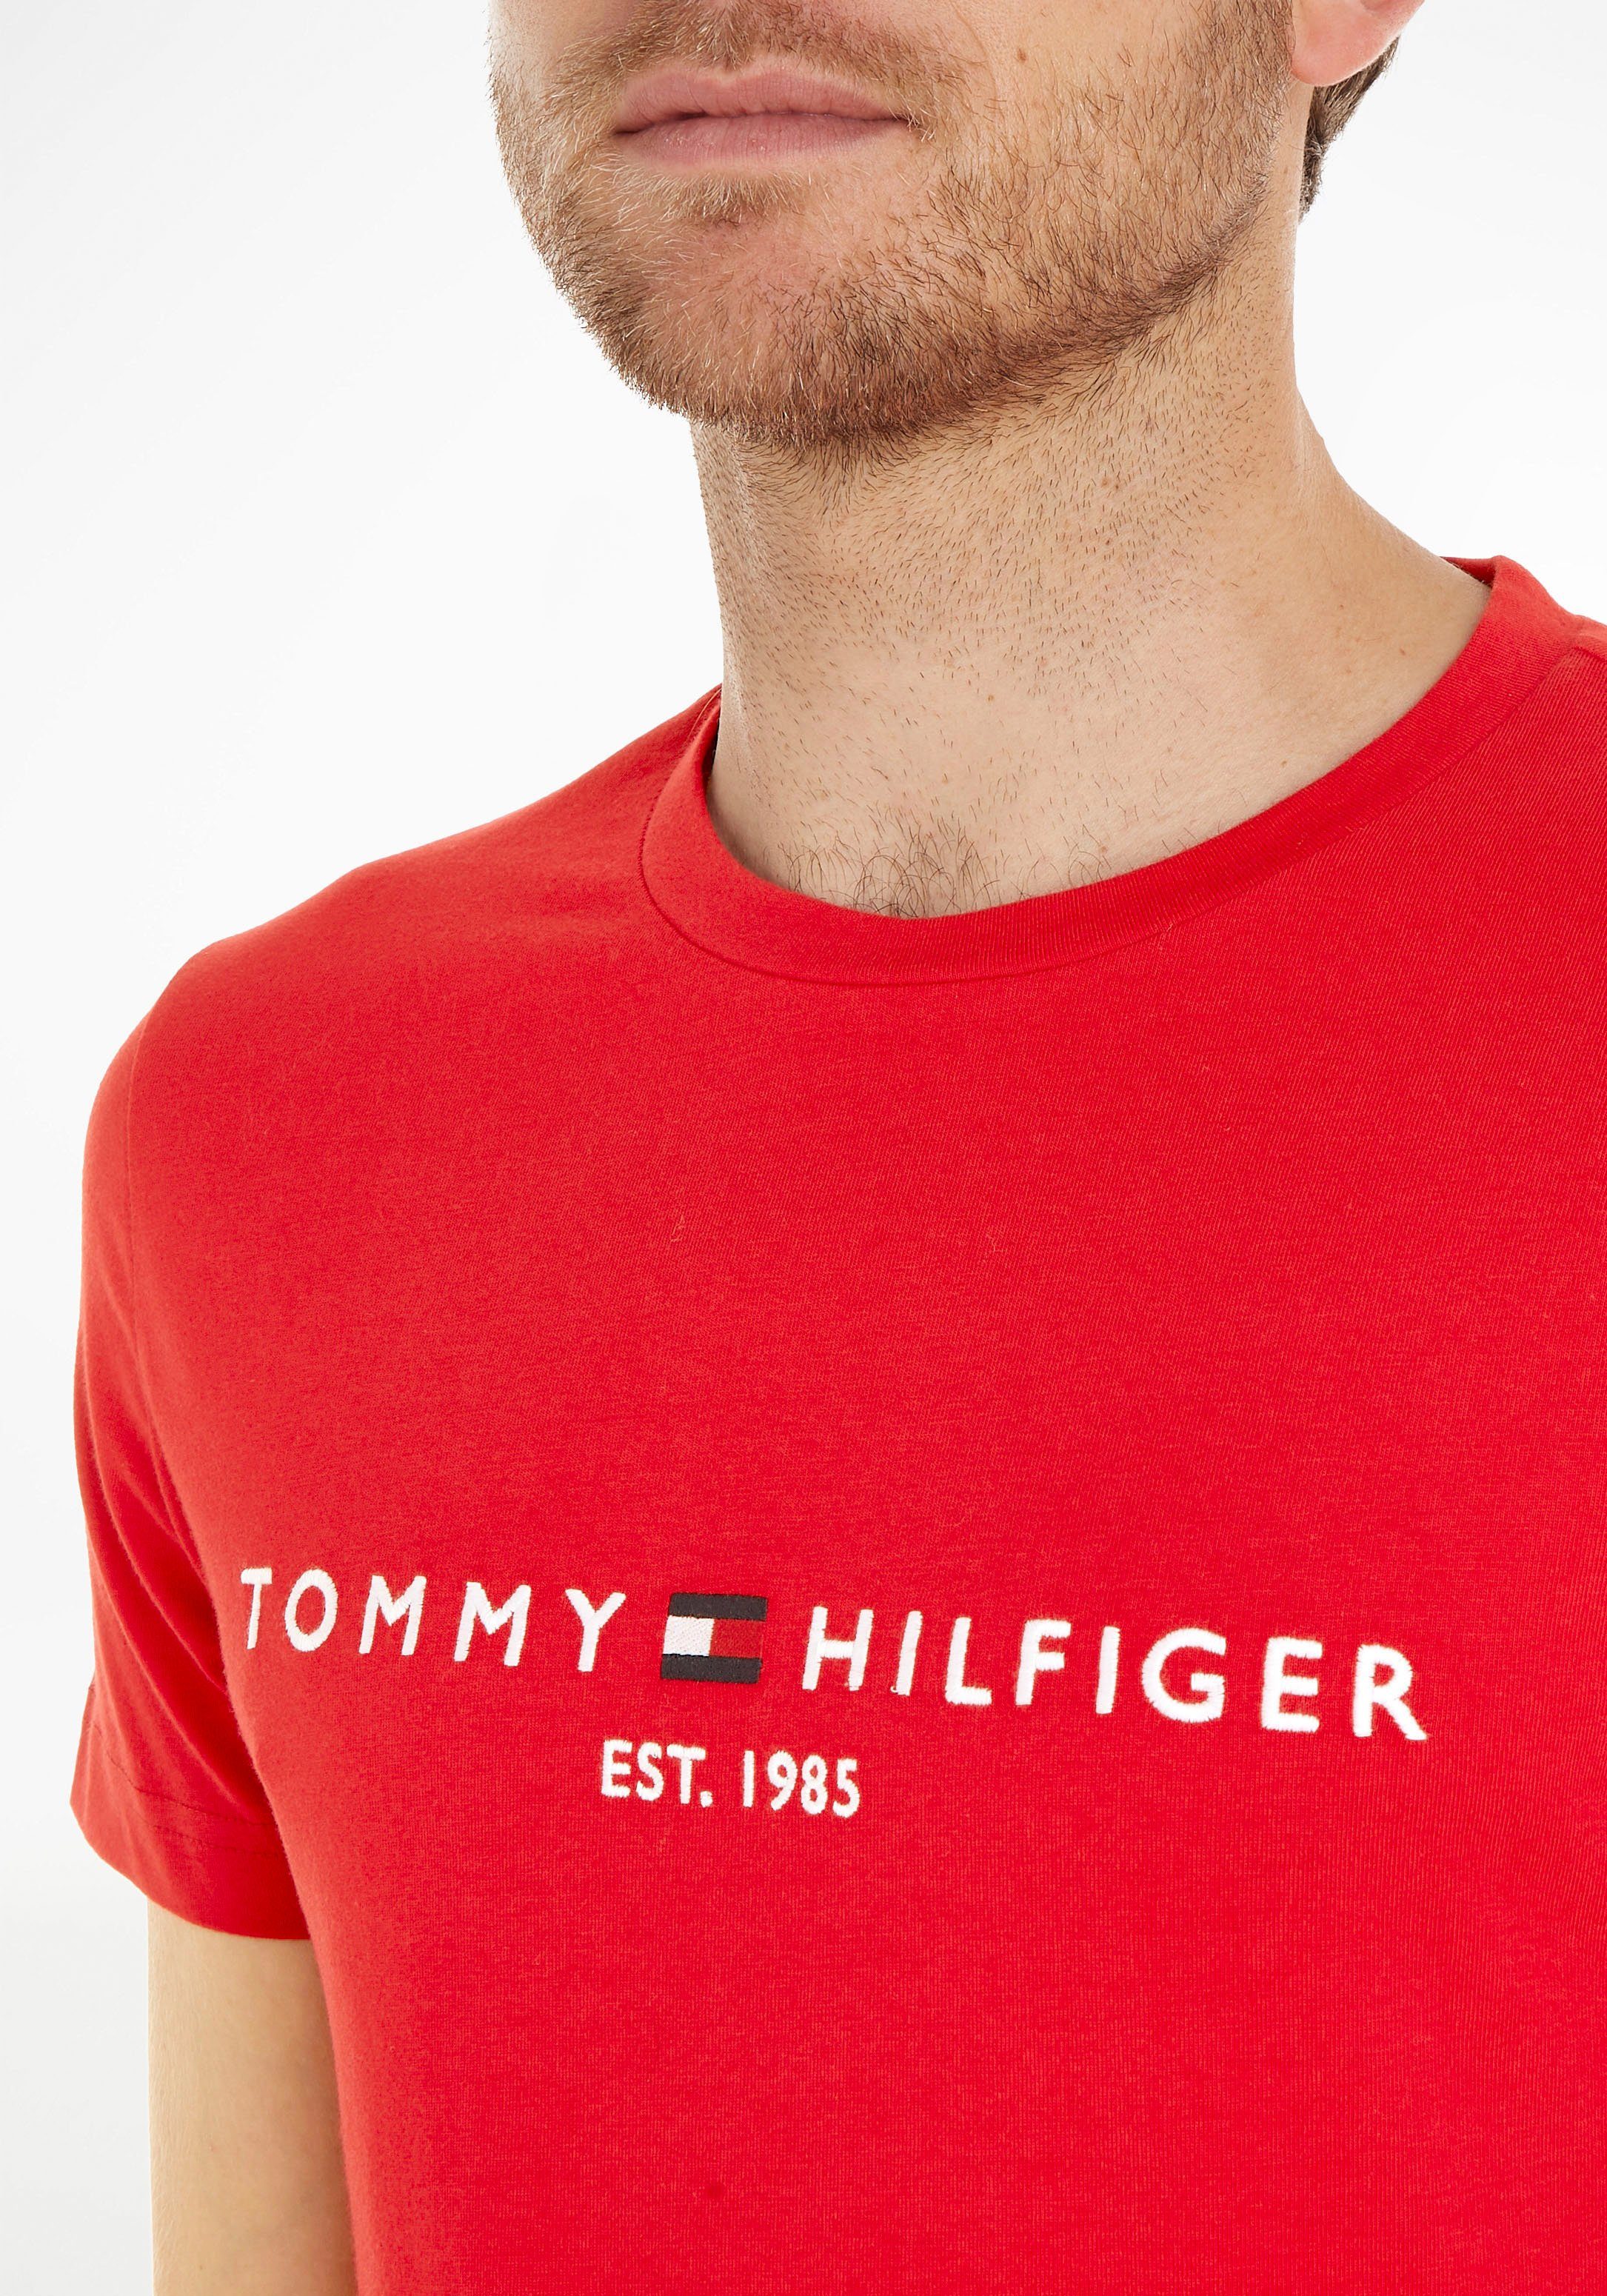 TEE nachhaltiger aus Hilfiger TOMMY Baumwolle T-Shirt LOGO Tommy rot reiner,